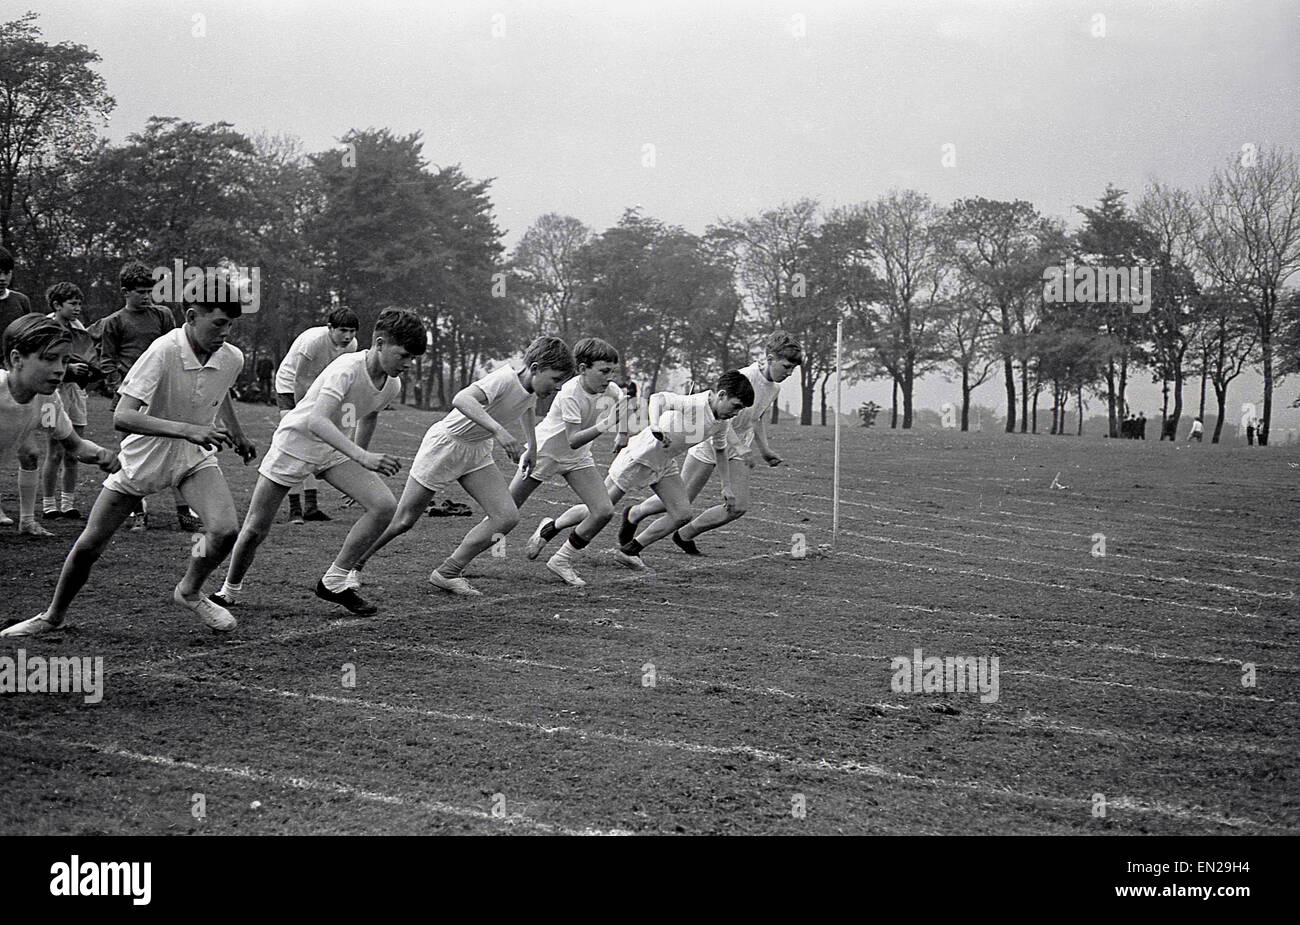 1960er Jahren Geschichtsbild vom Schulsporttag einer Gruppe von kleinen Kindern oder Schülern kurz vor dem start die 100 Meter, ein kurzer Sprint-Rennen. Stockfoto